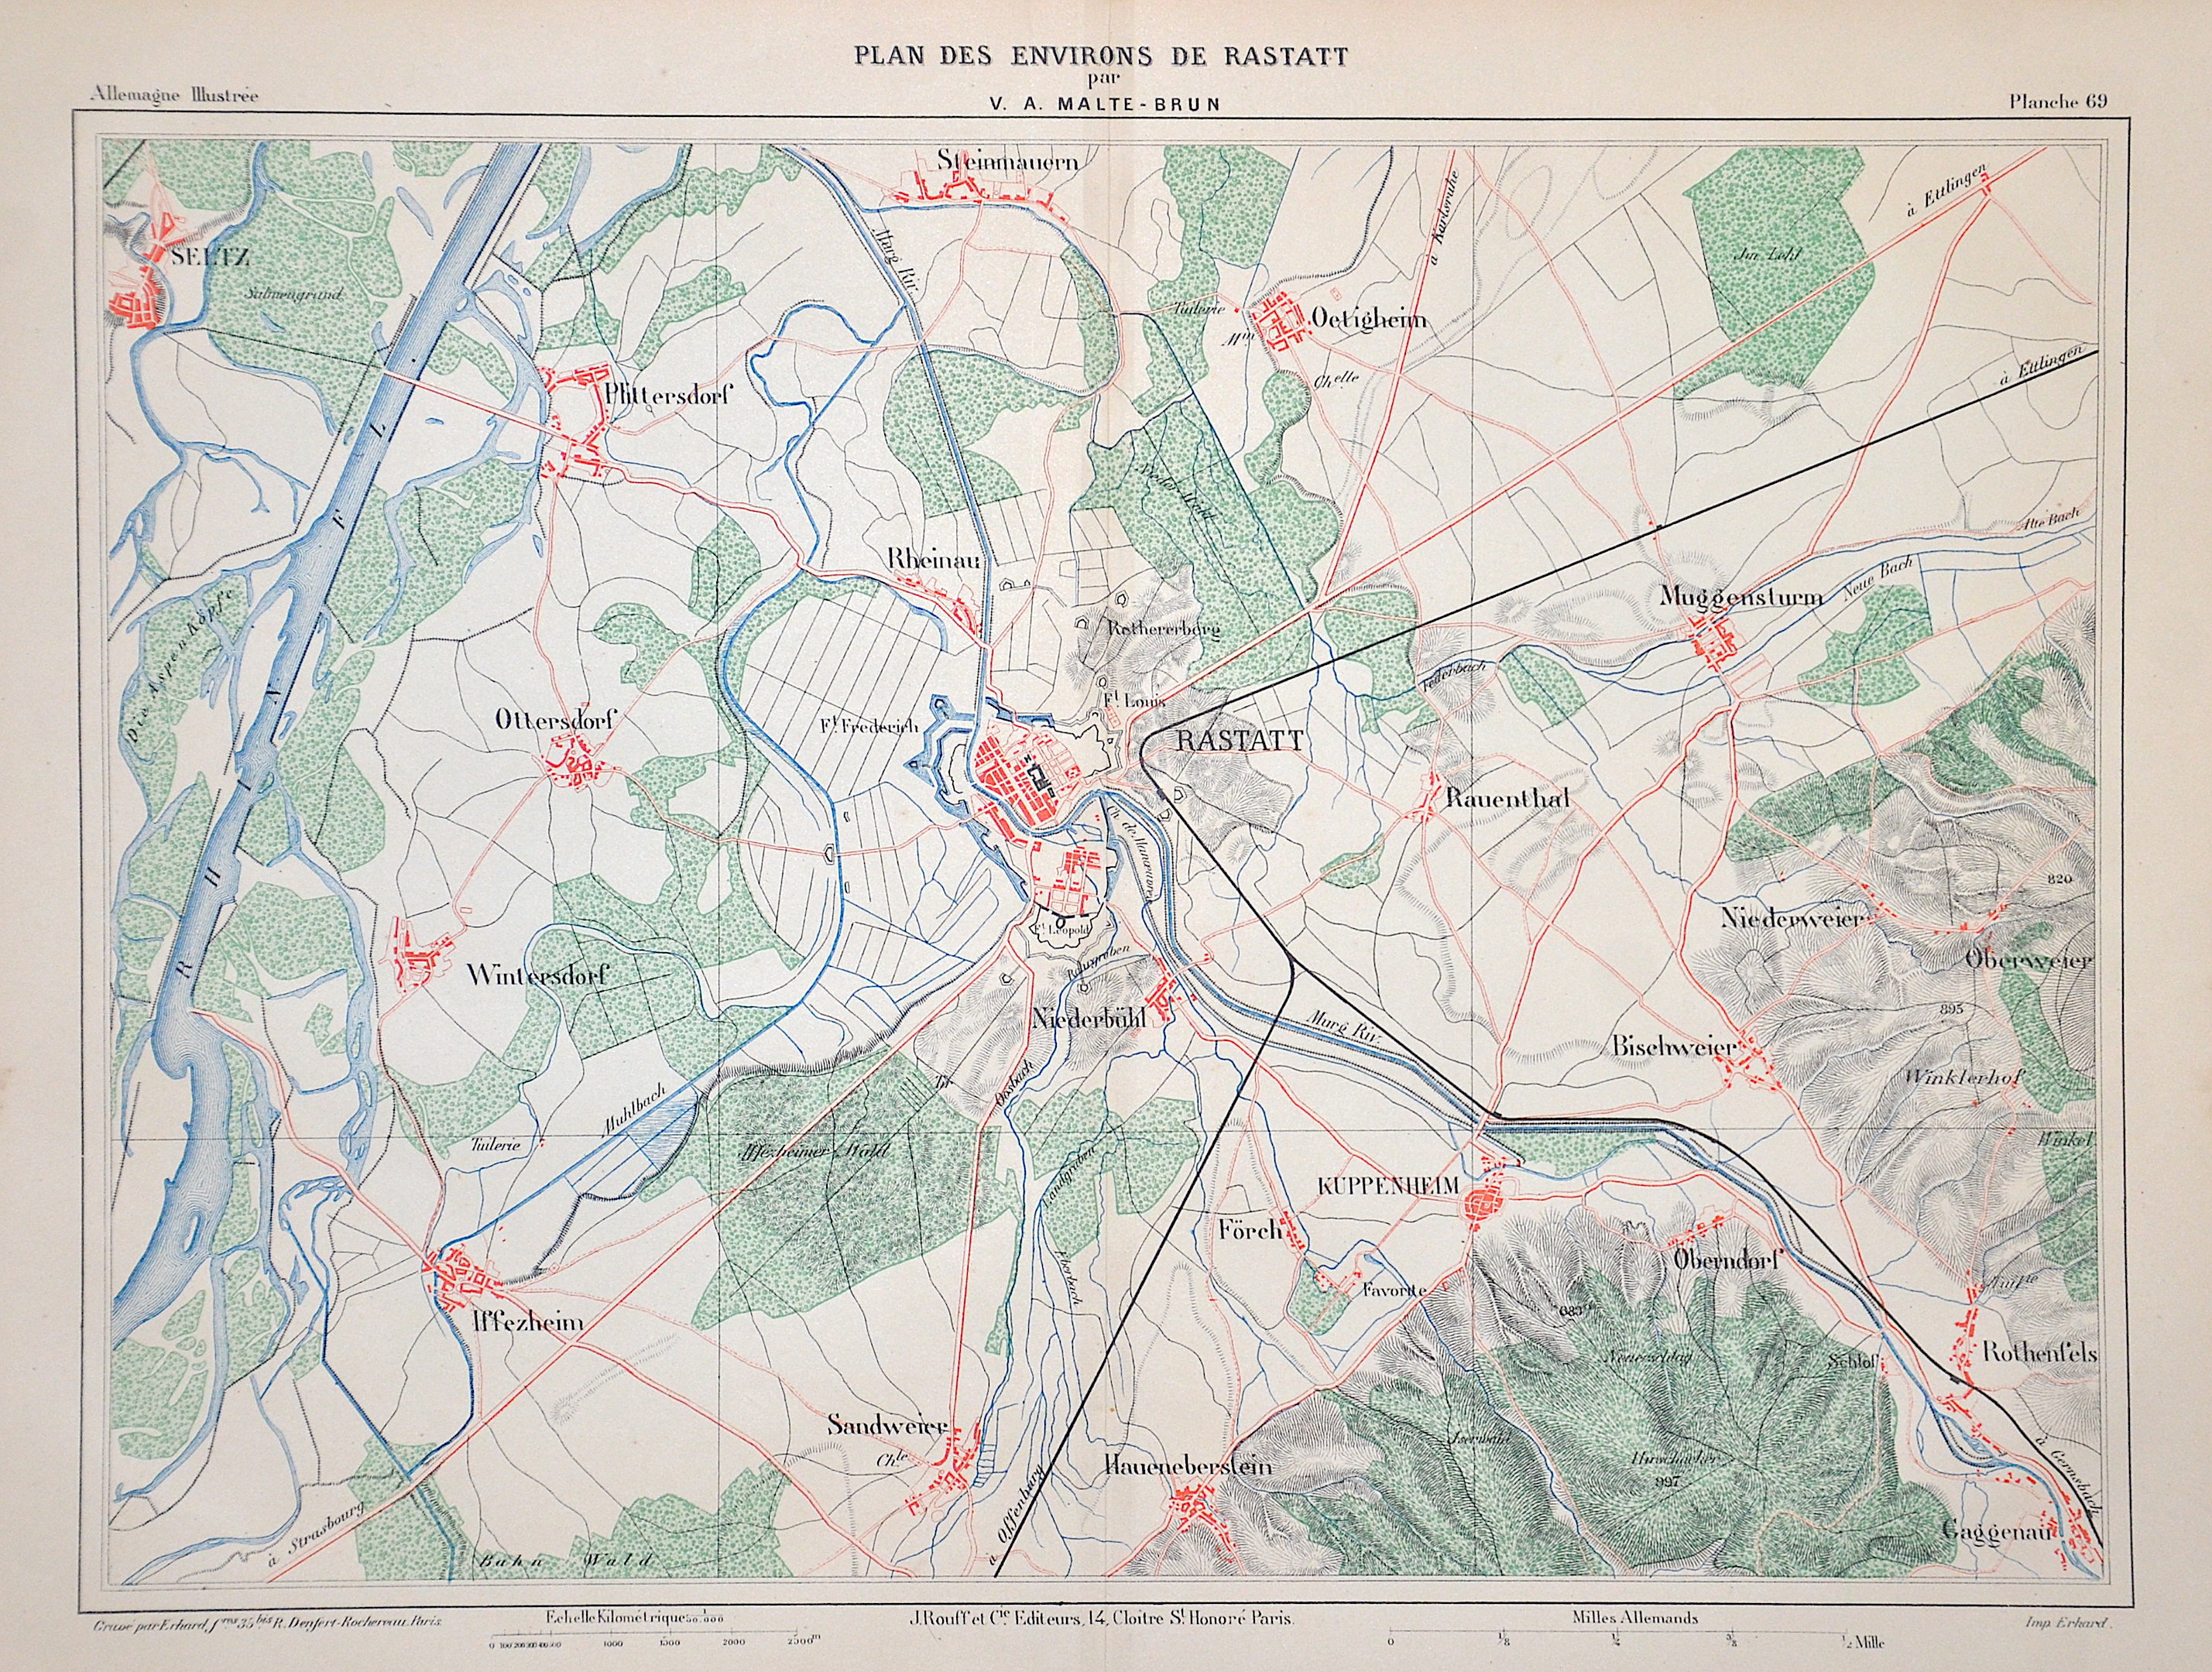 Malte-Brun Victor Adolphe Plan des Environs de Rastatt par V. A. Malte-Brun